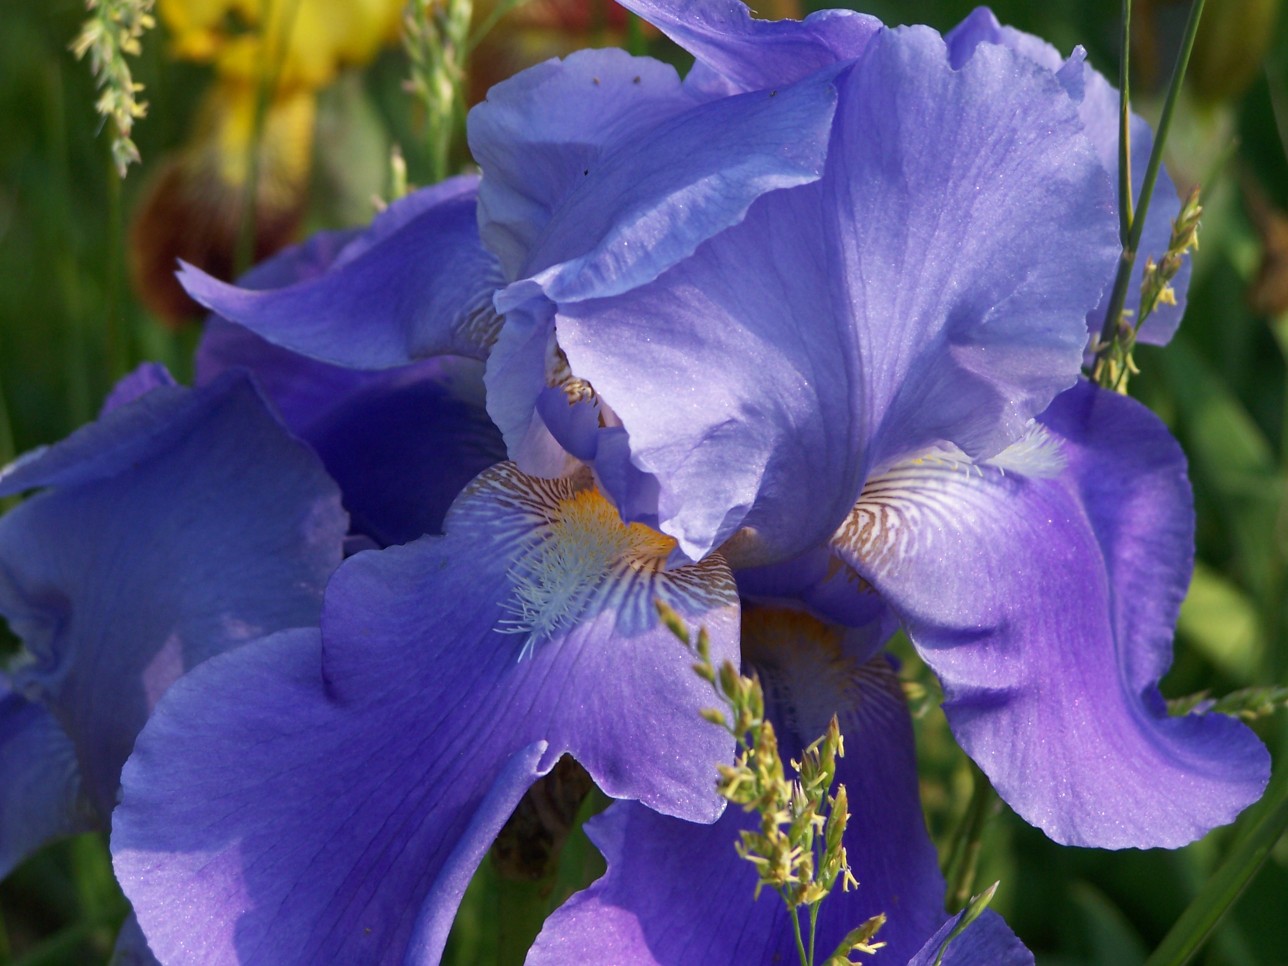 an iris flower